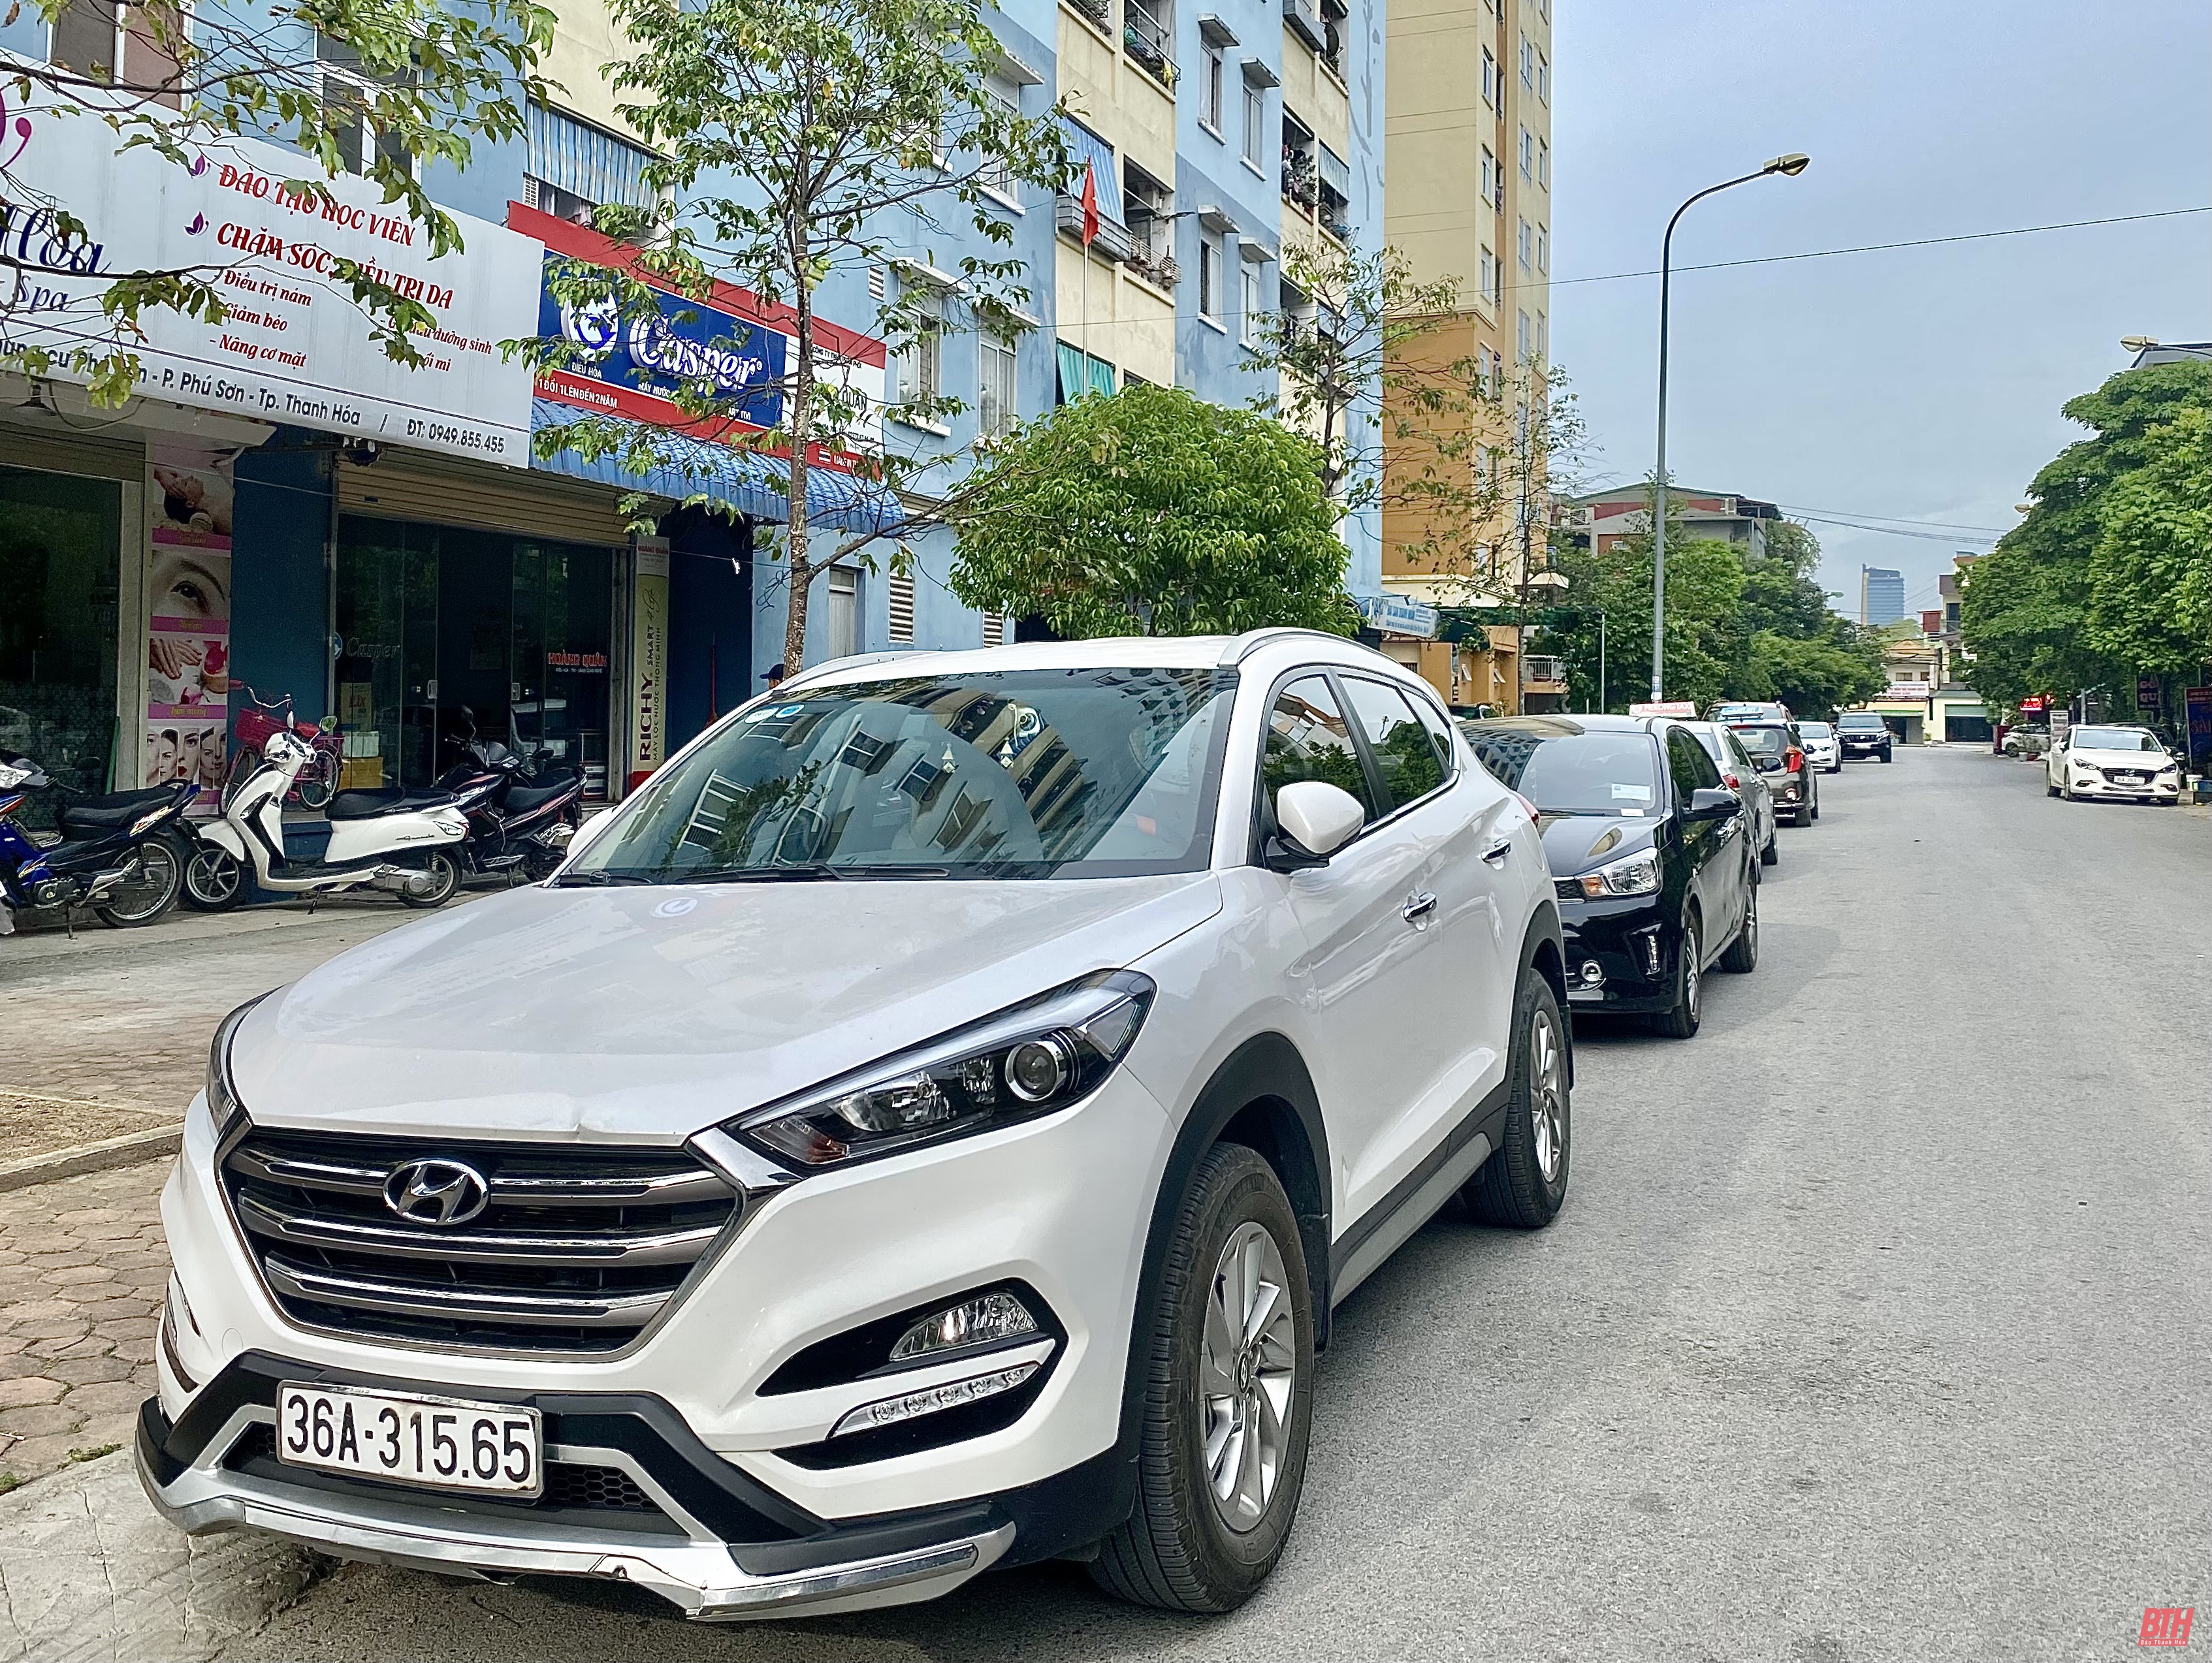 TP Thanh Hóa: “Đói” chỗ để xe tại các khu chung cư